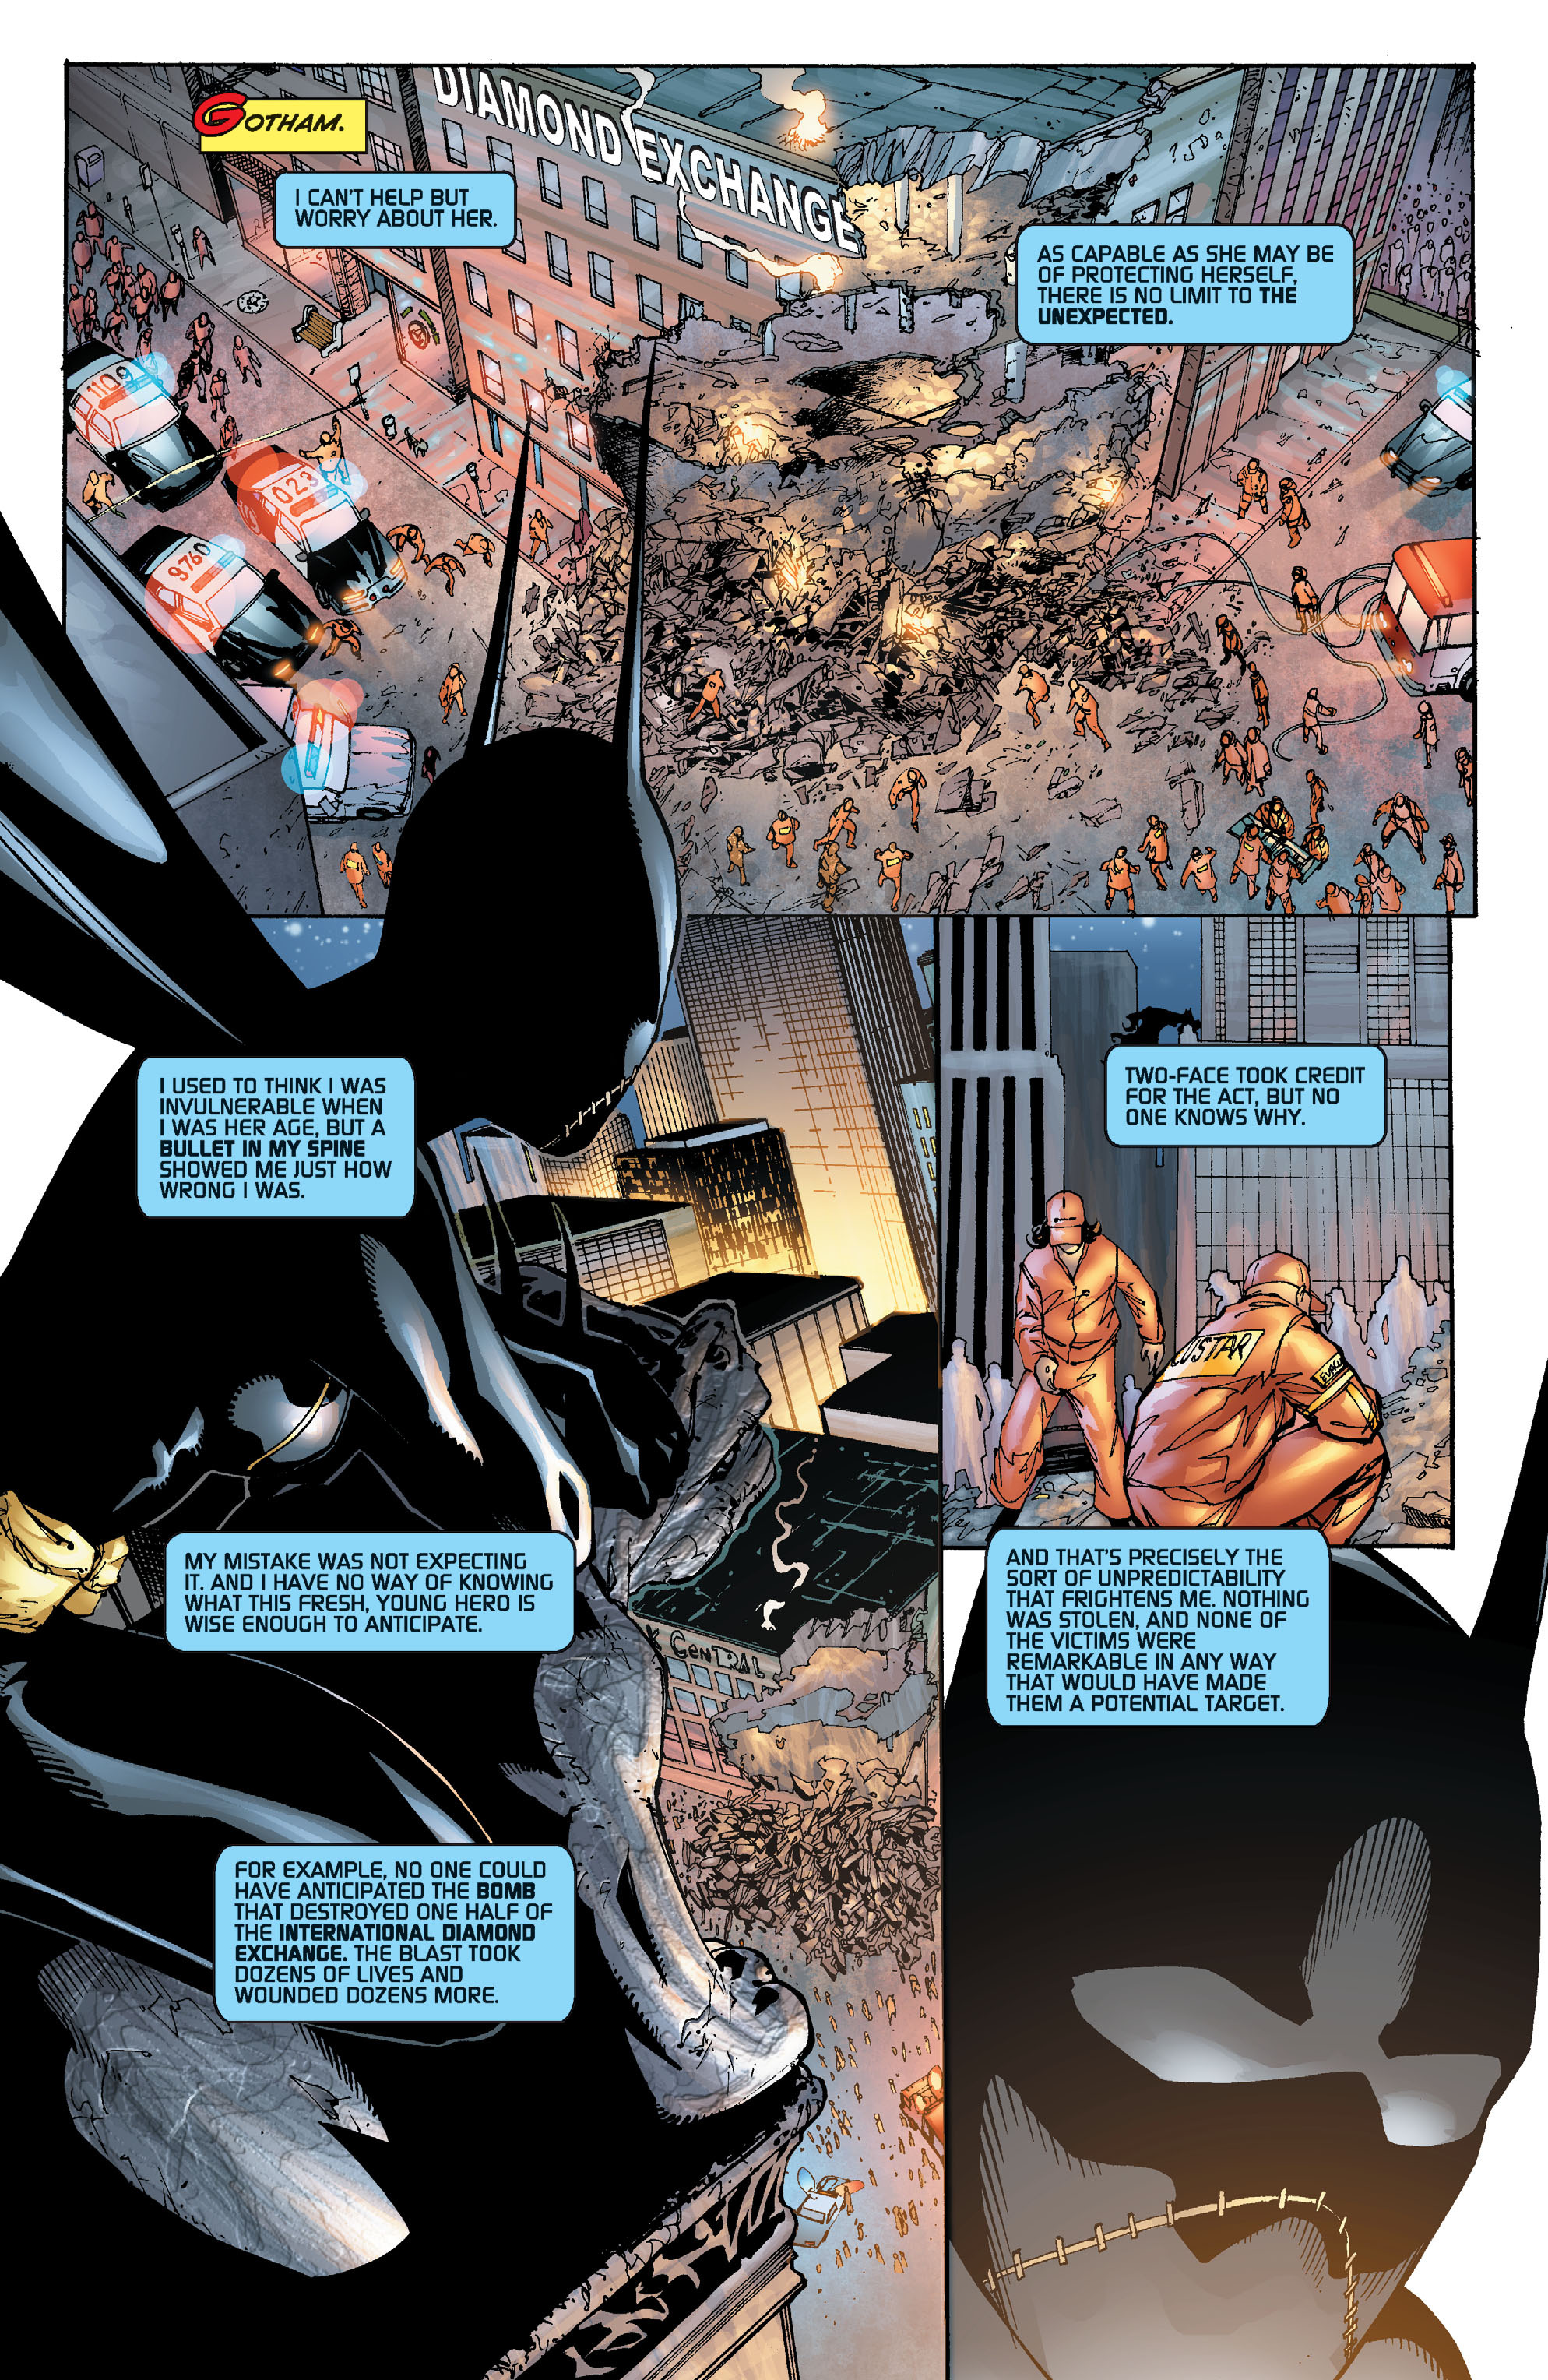 DC Comics/Dark Horse Comics: Justice League Full #1 - English 306